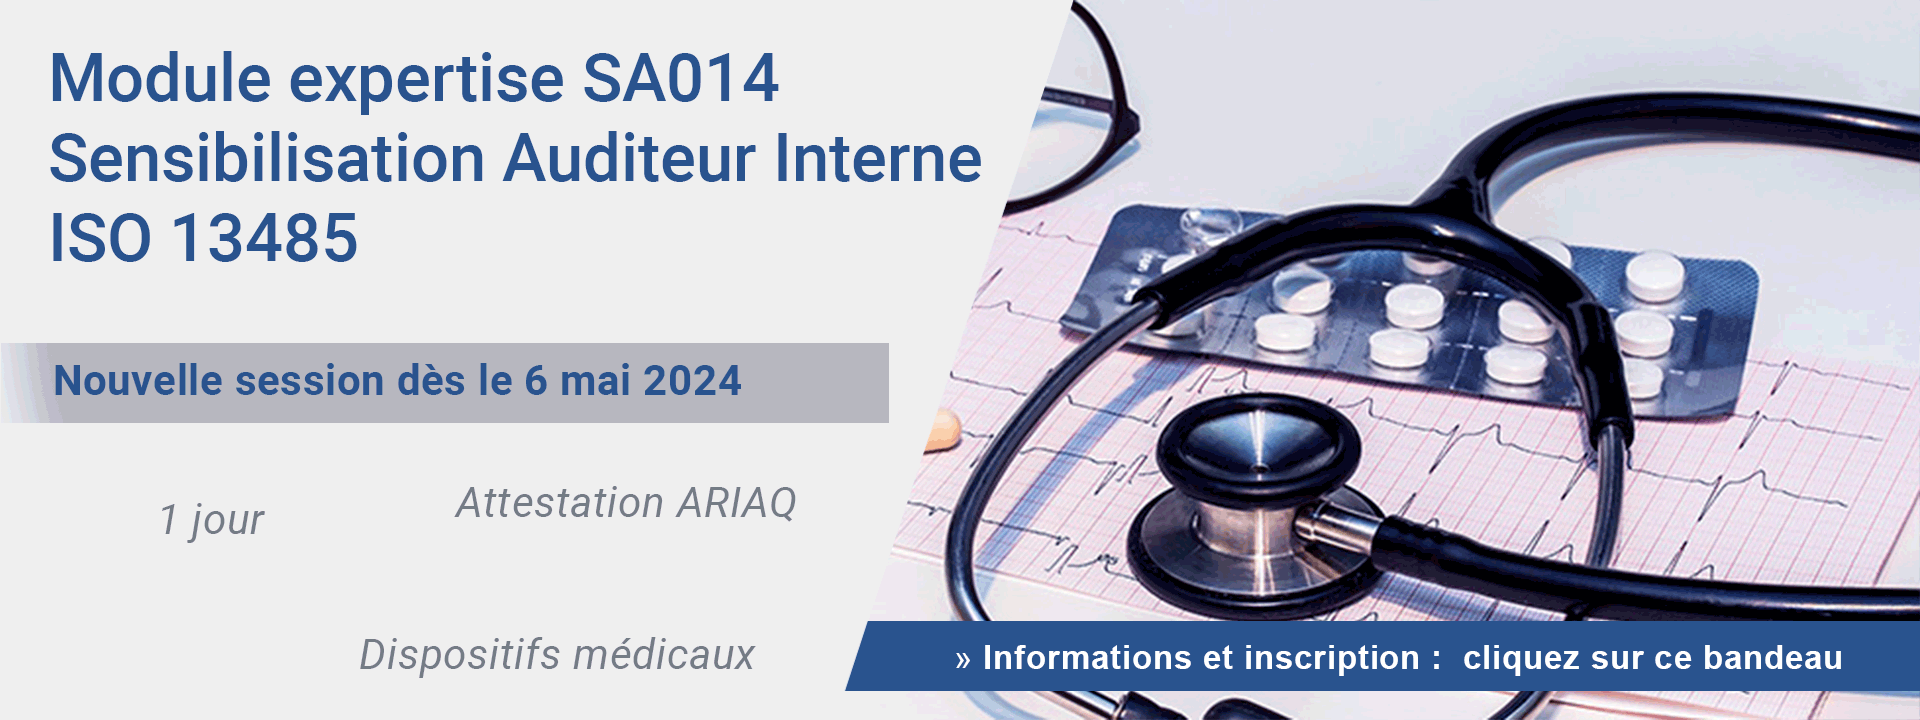 Module expertise SA014 : Sensibilisation Auditeur Interne ISO 13485 - Dispositifs Médicaux 